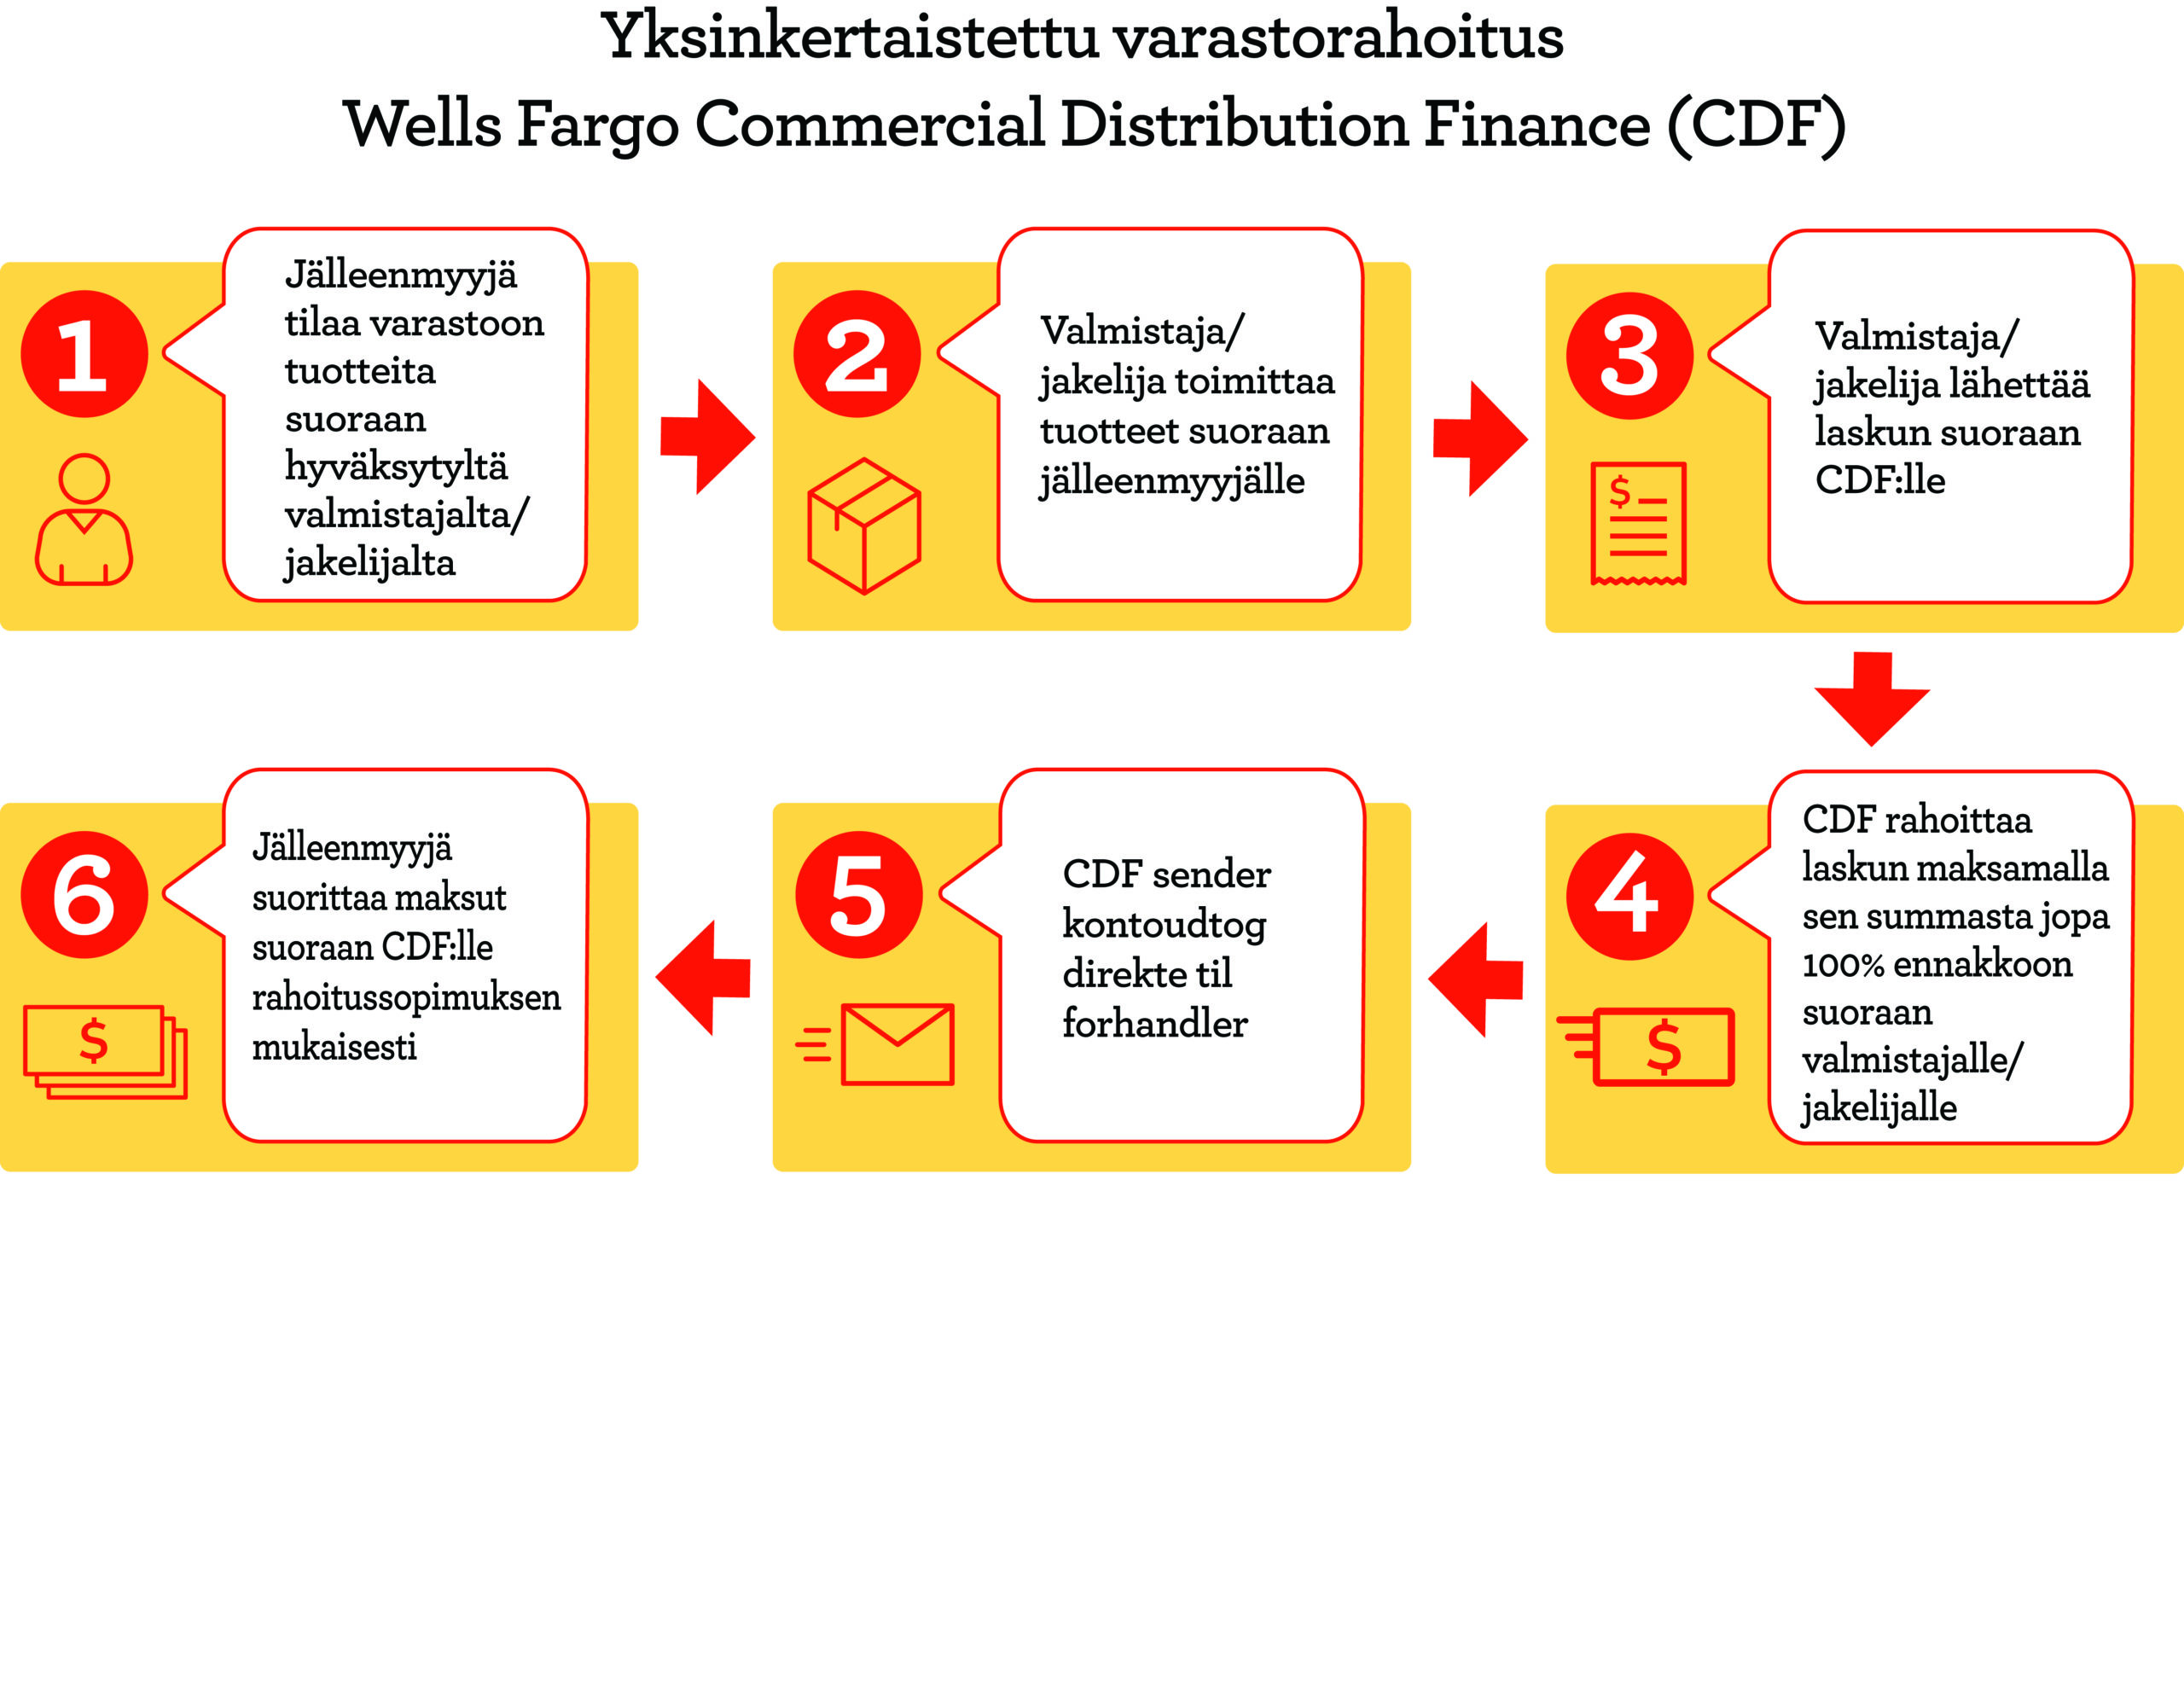 Yksinkertaistettu varastorahoitus Wells Fargo Commercial Distribution Finance -palvelun kautta 1.Jälleenmyyjä tilaa varastoon tuotteita suoraan hyväksytyltä valmistajalta/jakelijalta. 2.Valmistaja/jakelija toimittaa tuotteet suoraan jälleenmyyjälle. 3.Valmistaja/jakelija lähettää laskun suoraan CDF:lle. 4.CDF rahoittaa laskun maksamalla sen summasta jopa 100 % ennakkoon suoraan valmistajalle/jakelijalle. 5.CDF lähettää tapahtumaraportin suoraan jälleenmyyjälle. 6.Jälleenmyyjä suorittaa maksut suoraan CDF:lle rahoitussopimuksen mukaisesti.